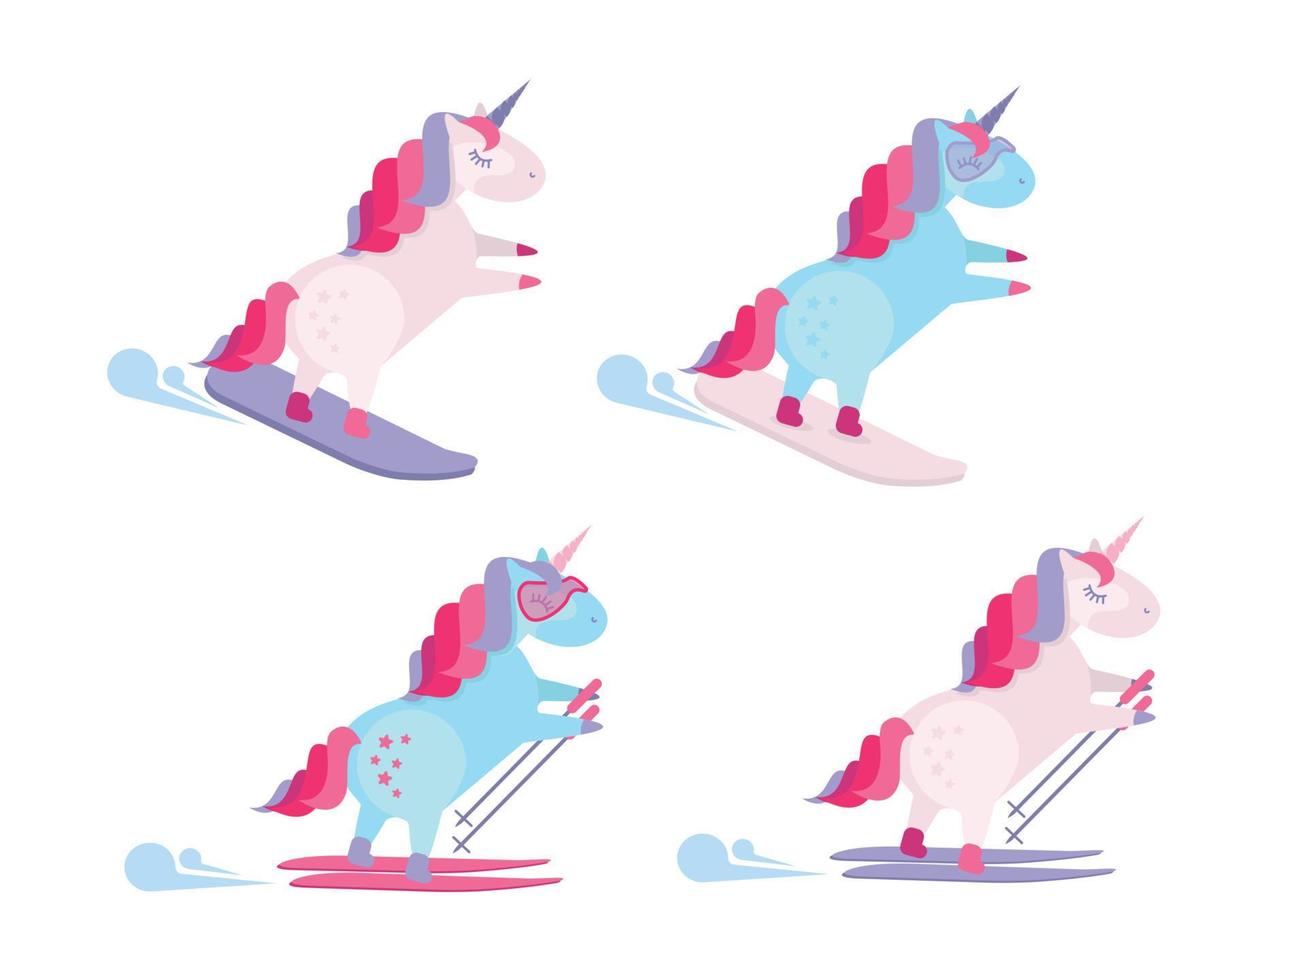 set de 4 unicornios en estación de esquí. unicornio de snowboard. lindo unicornio deslizarse por la colina de nieve en snowboard. unicornio montando esquí alpino. unicornio en esquís y con bastones de esquí. ilustración de estilo de dibujos animados plana vector